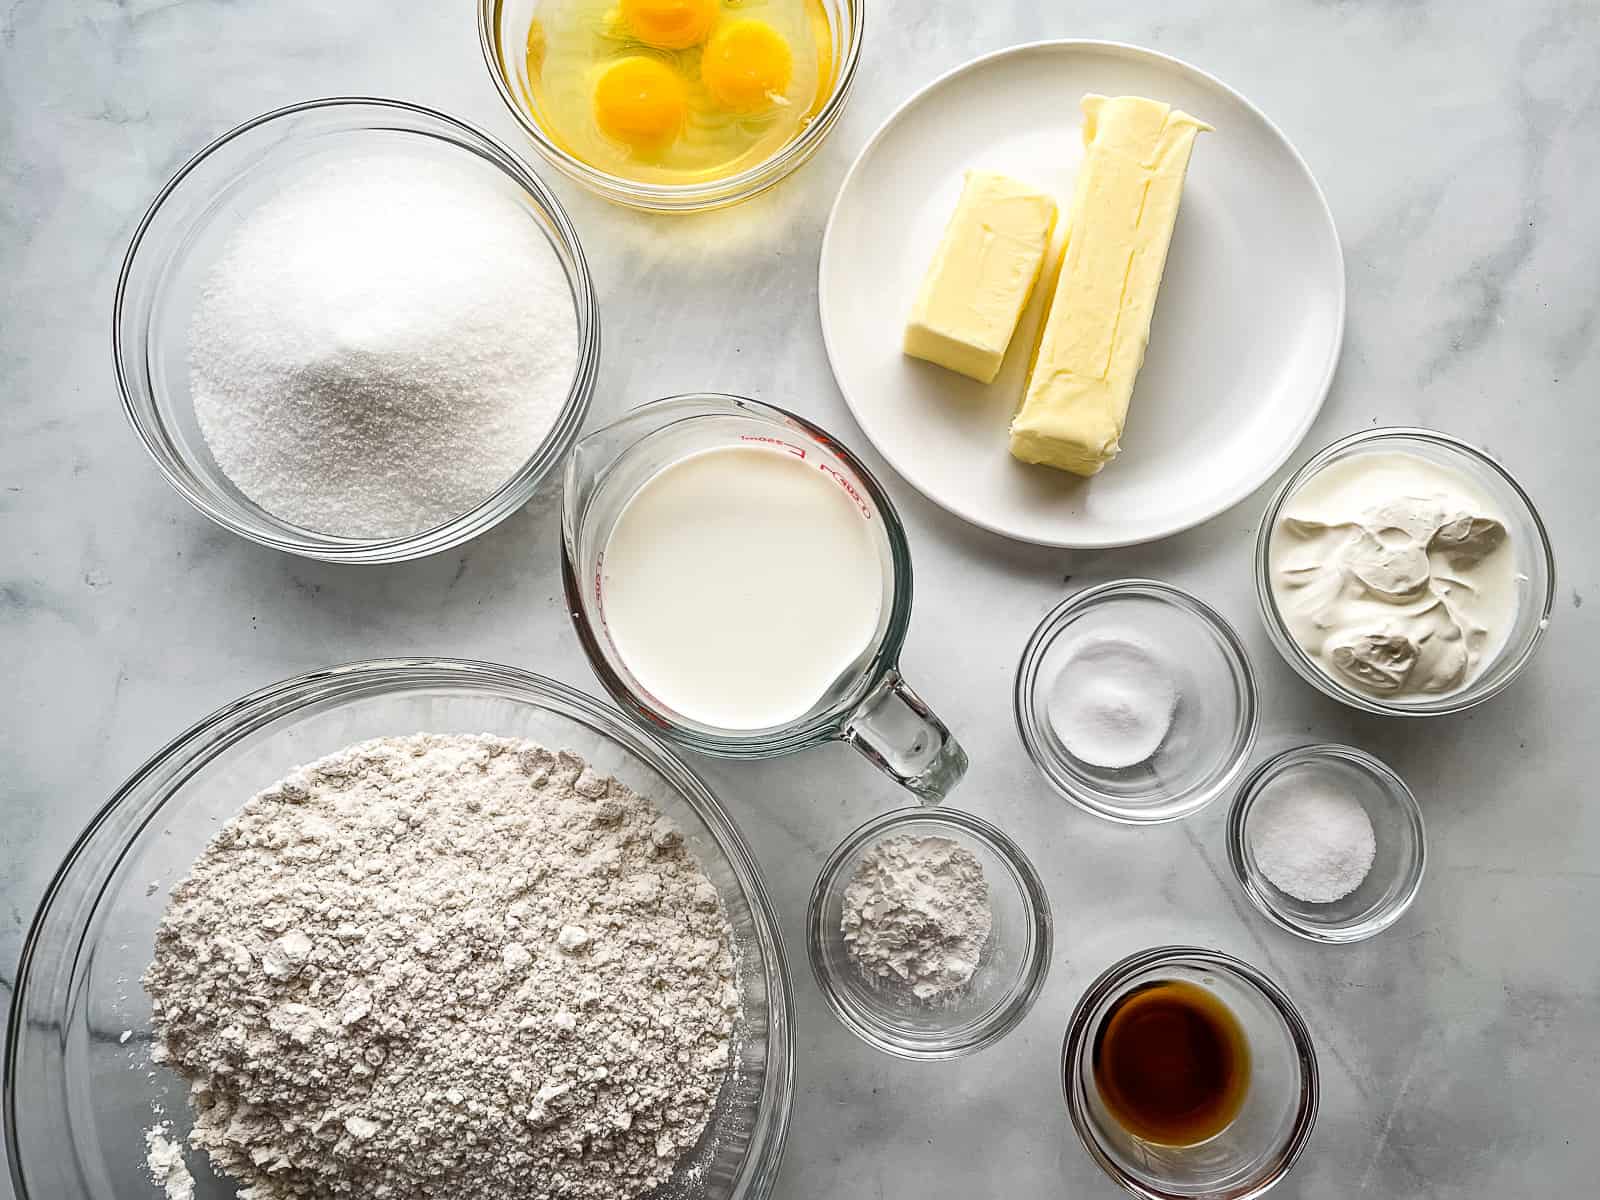 Gluten-free vanilla cake ingredients.